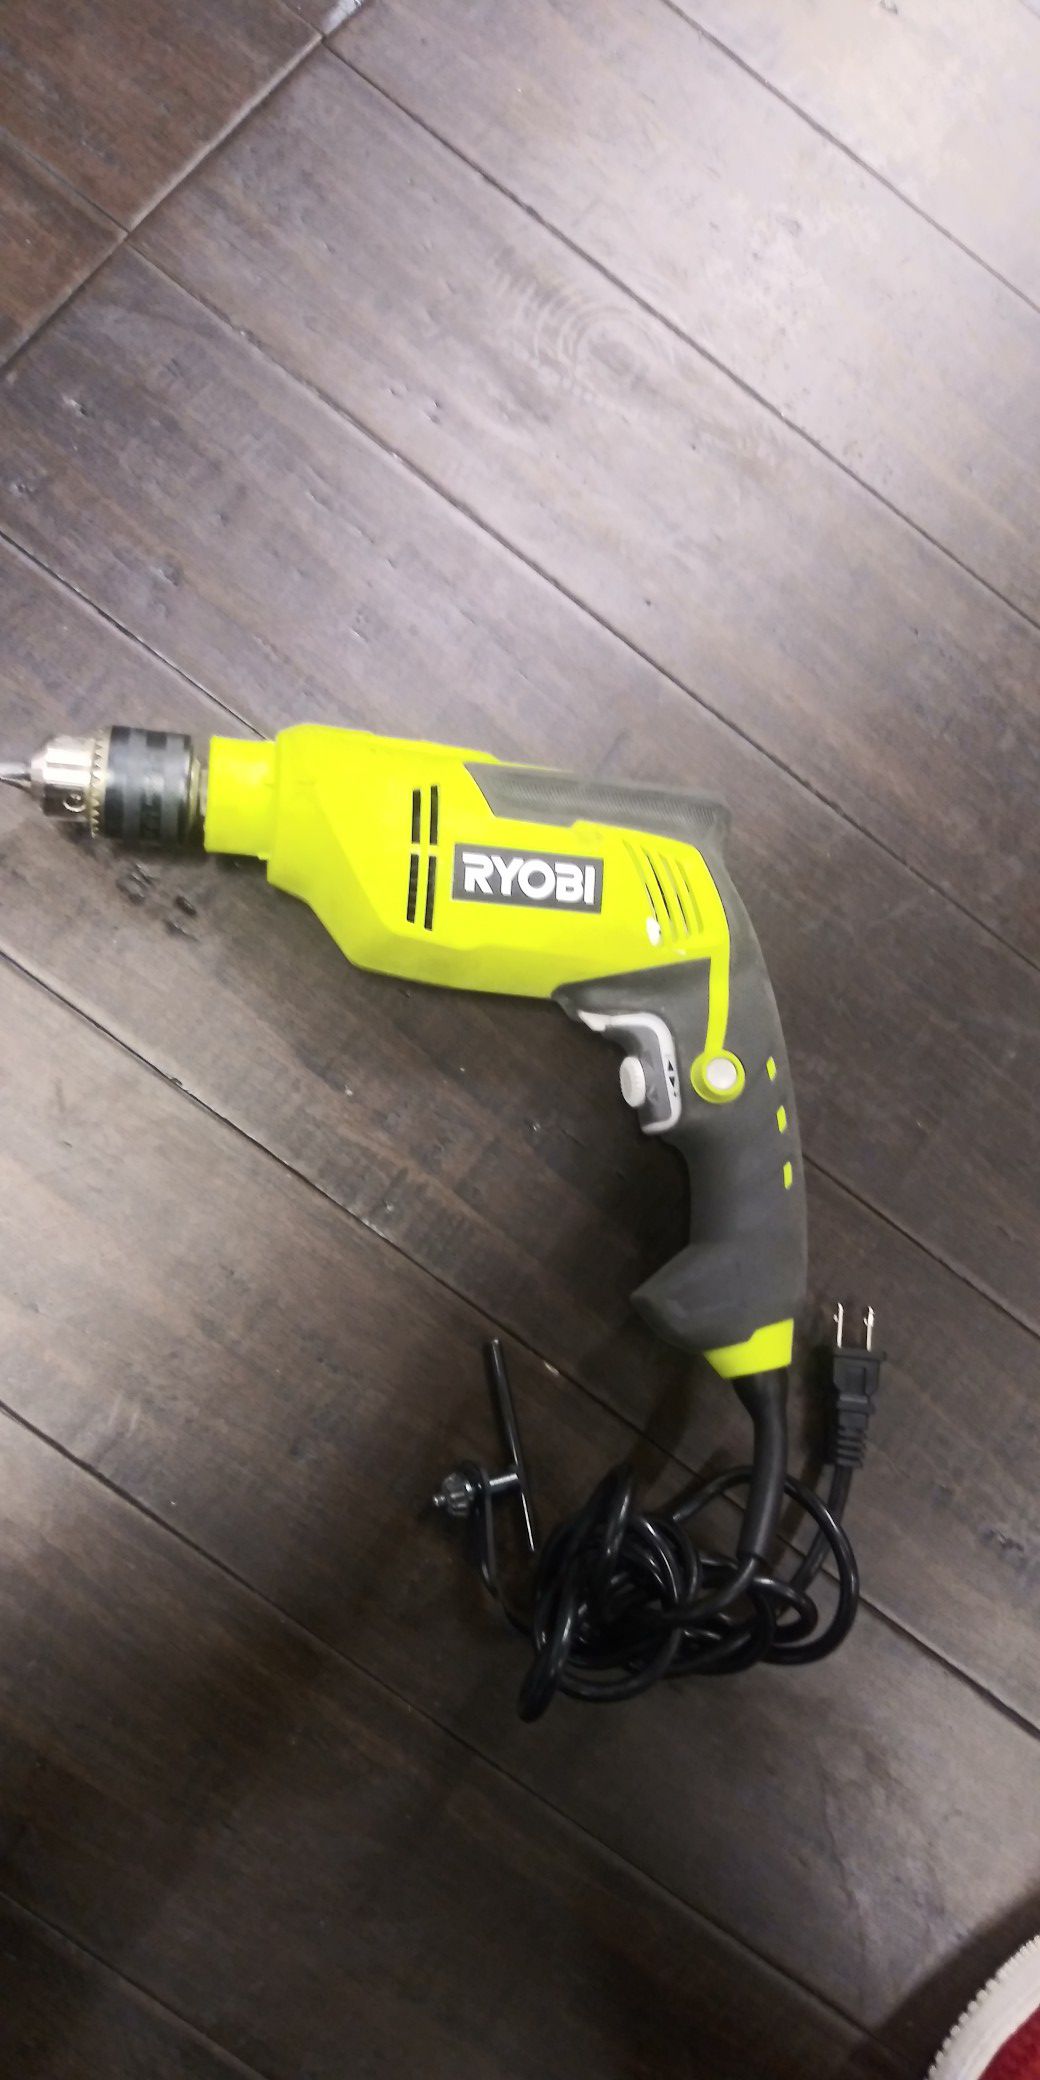 Ryobi hammer drill